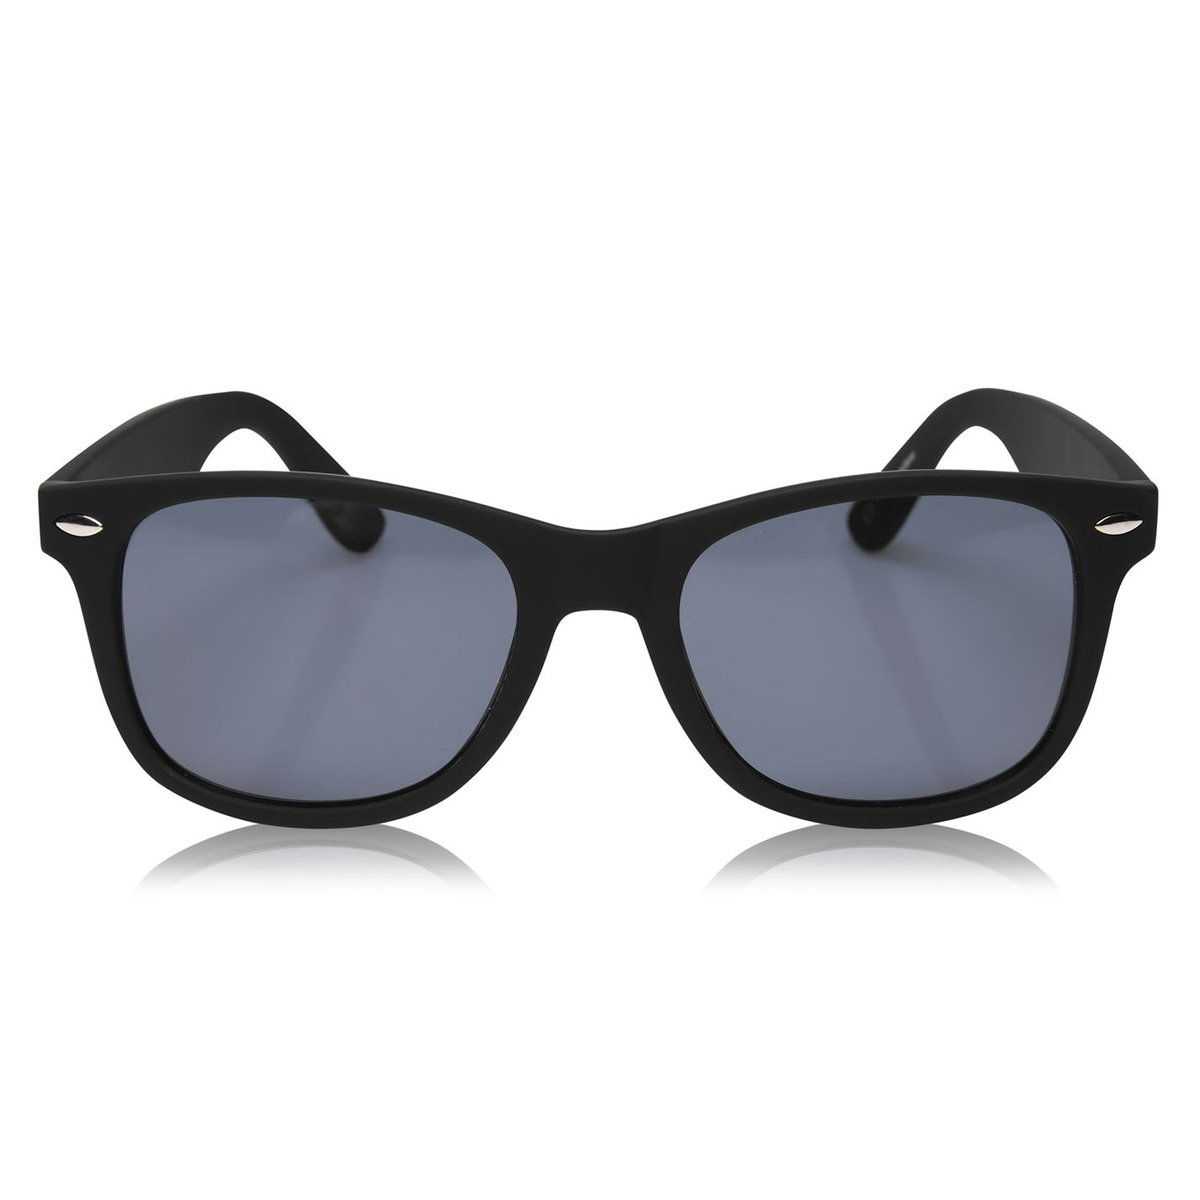 Slazenger Solbriller med etui, helt ny, aldri brukt | FINN torget